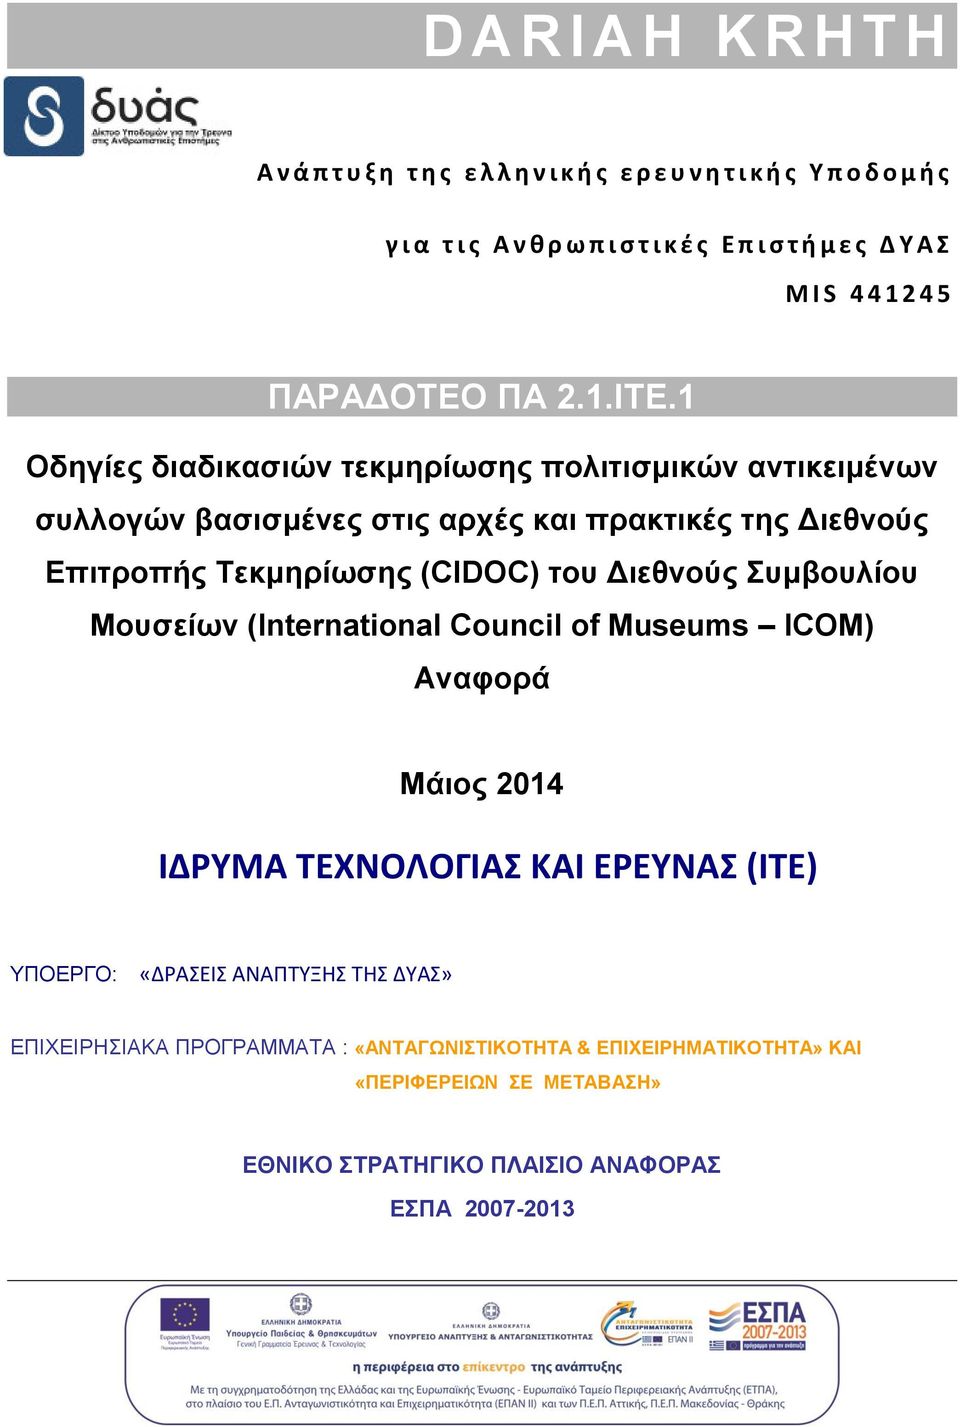 1 Οδηγίες διαδικασιών τεκμηρίωσης πολιτισμικών αντικειμένων συλλογών βασισμένες στις αρχές και πρακτικές της Διεθνούς Επιτροπής Τεκμηρίωσης (CIDOC) του Διεθνούς